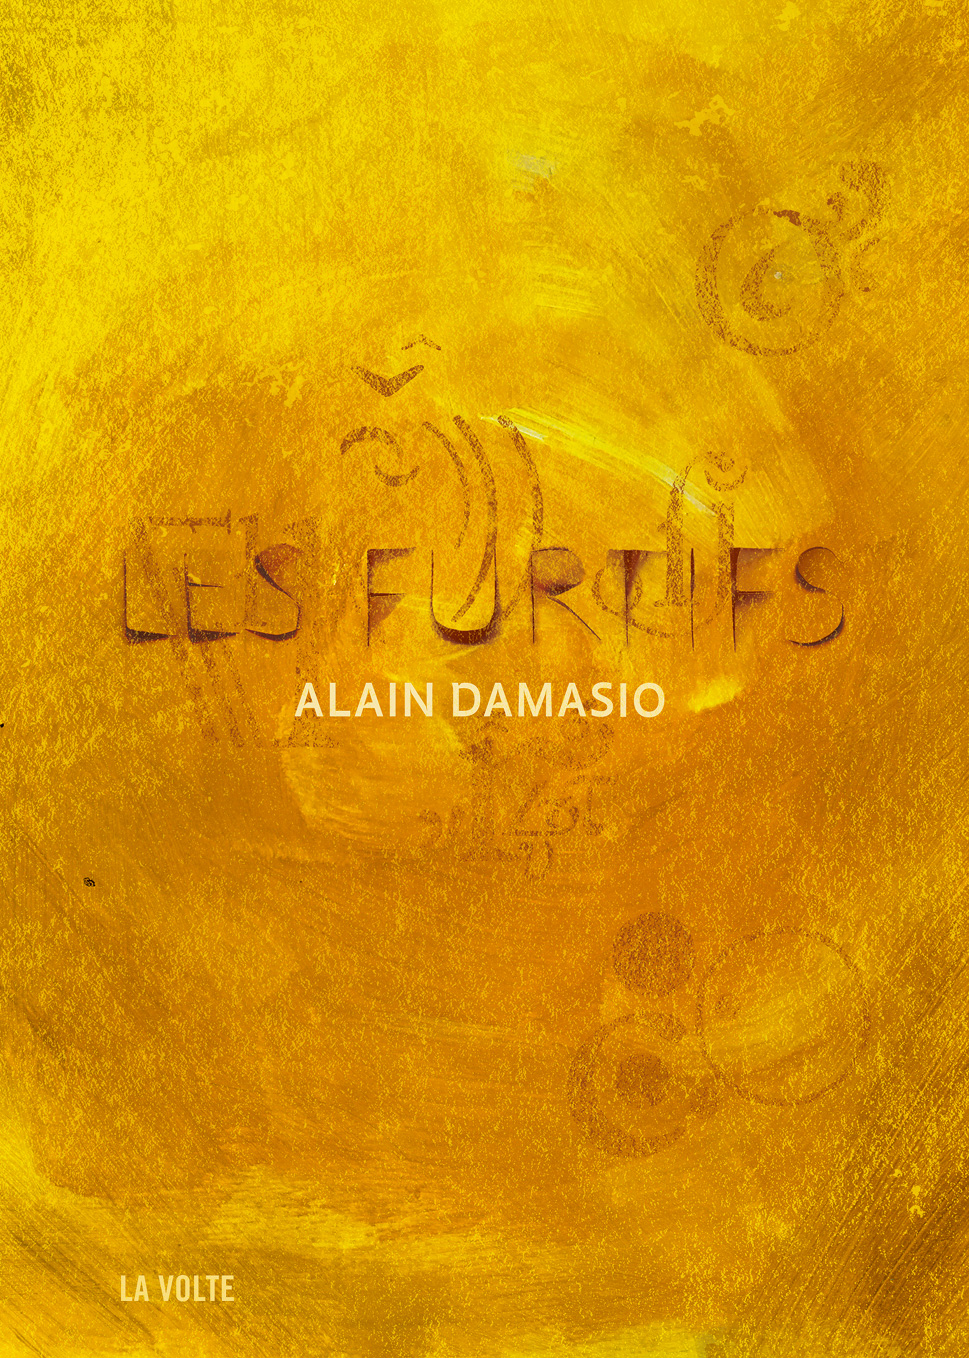 Les Furtifs, Alain Damasio dévoile les secrets de son nouveau roman